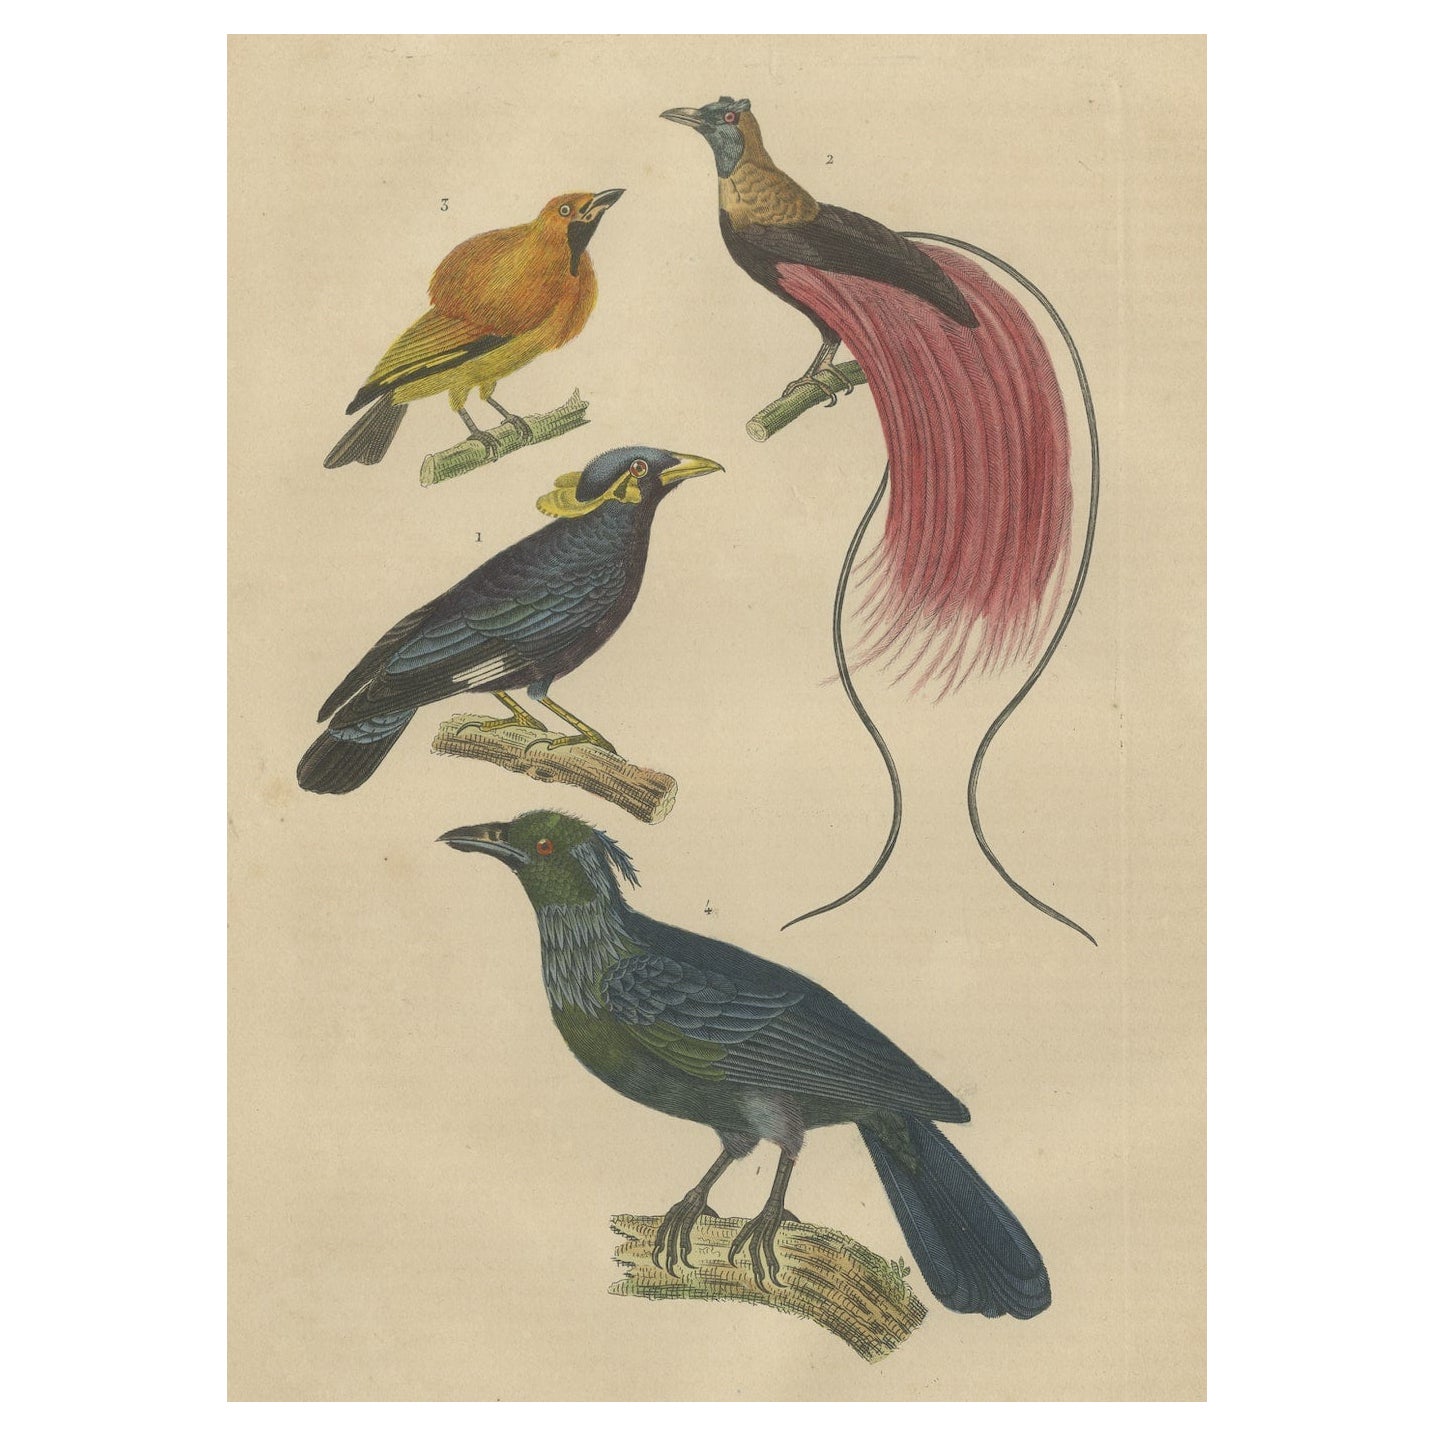 Impression d'oiseaux avec l'oiseau du paradis, un oiseau arqué masqué et Trompetkparadijskraai